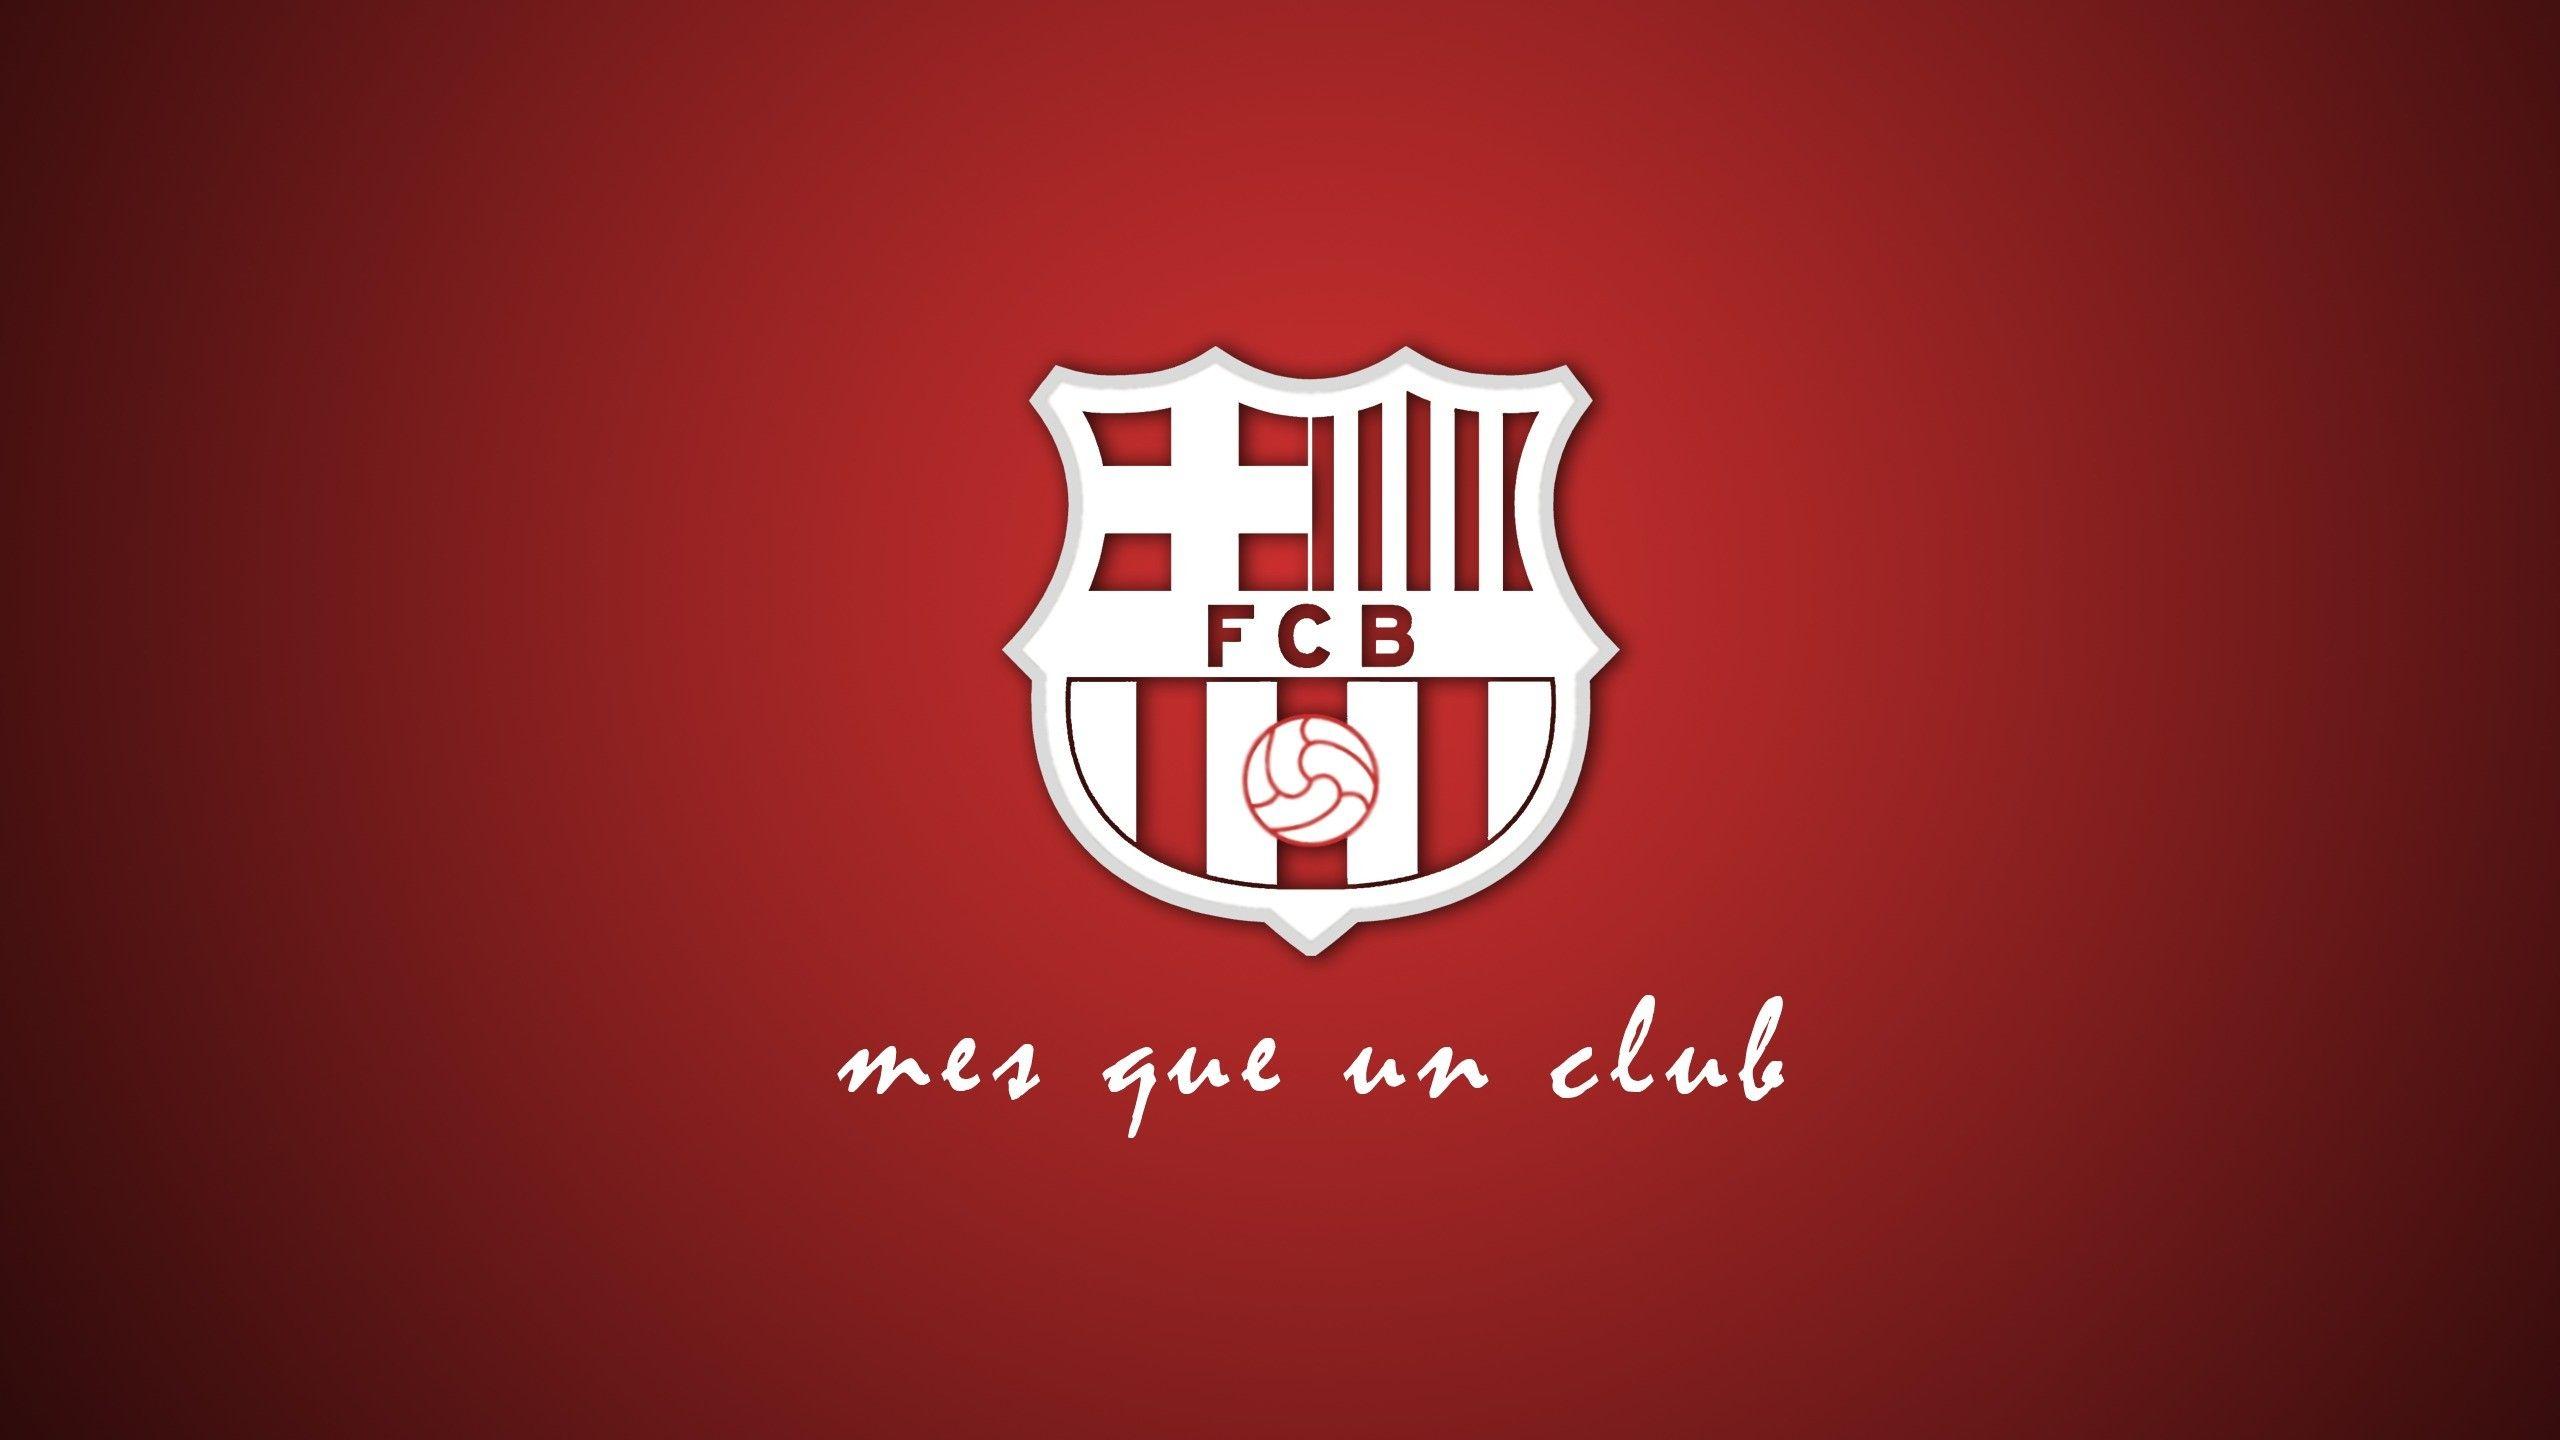 44 FC Barcelona Wallpaper 1080p  WallpaperSafari